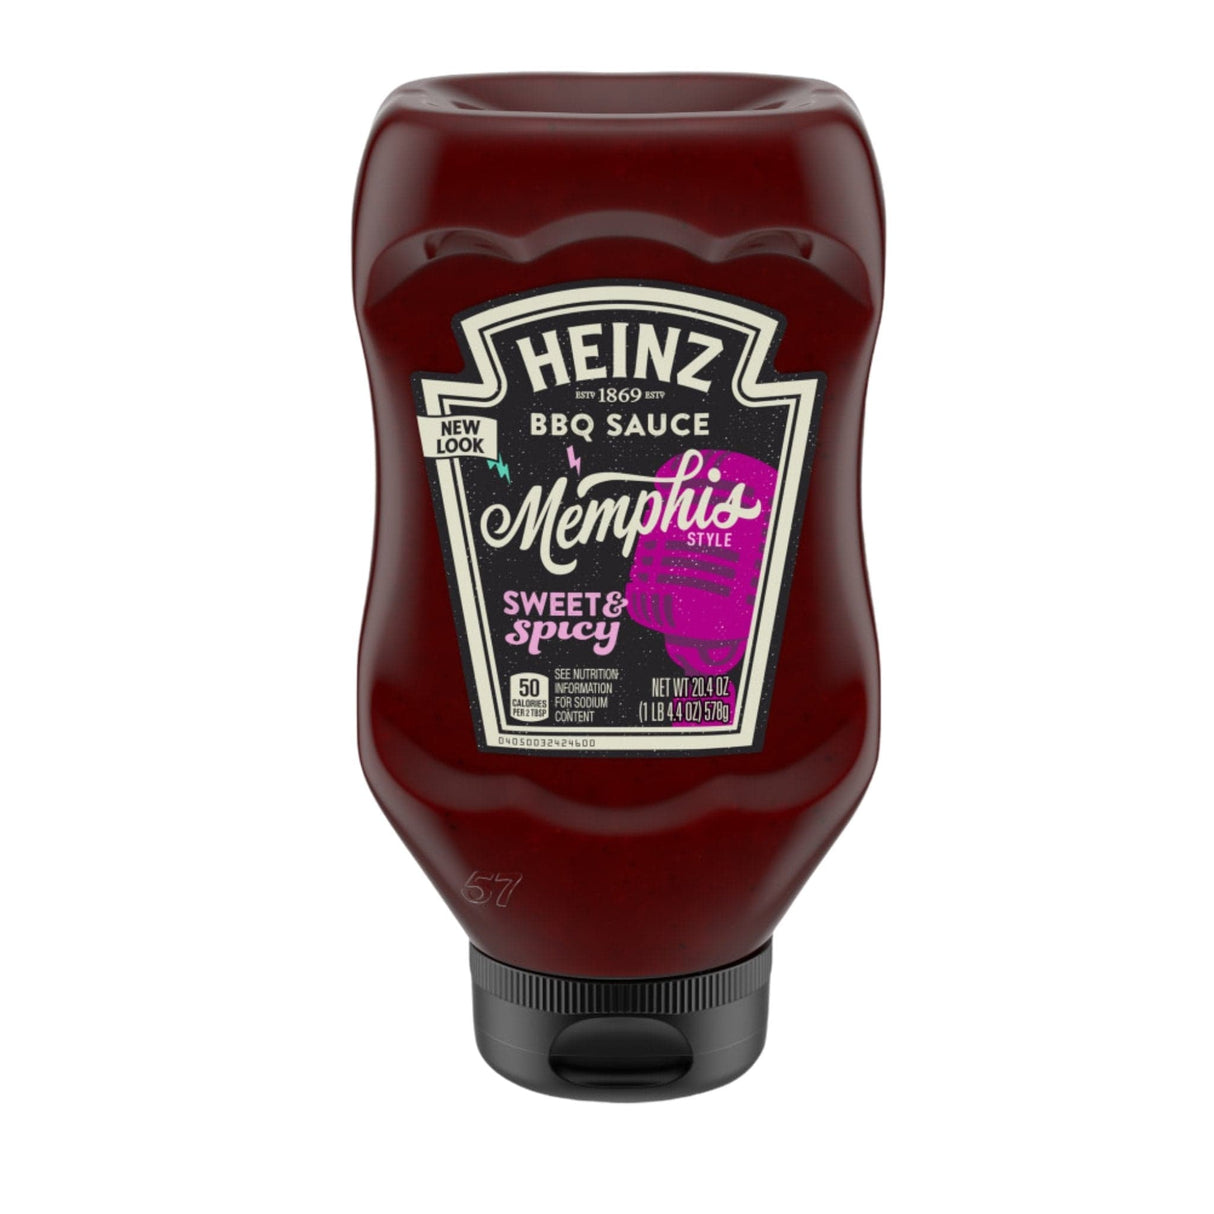 Heinz Memphis Sweet & Spicy BBQ Sauce - hot sauce market & more